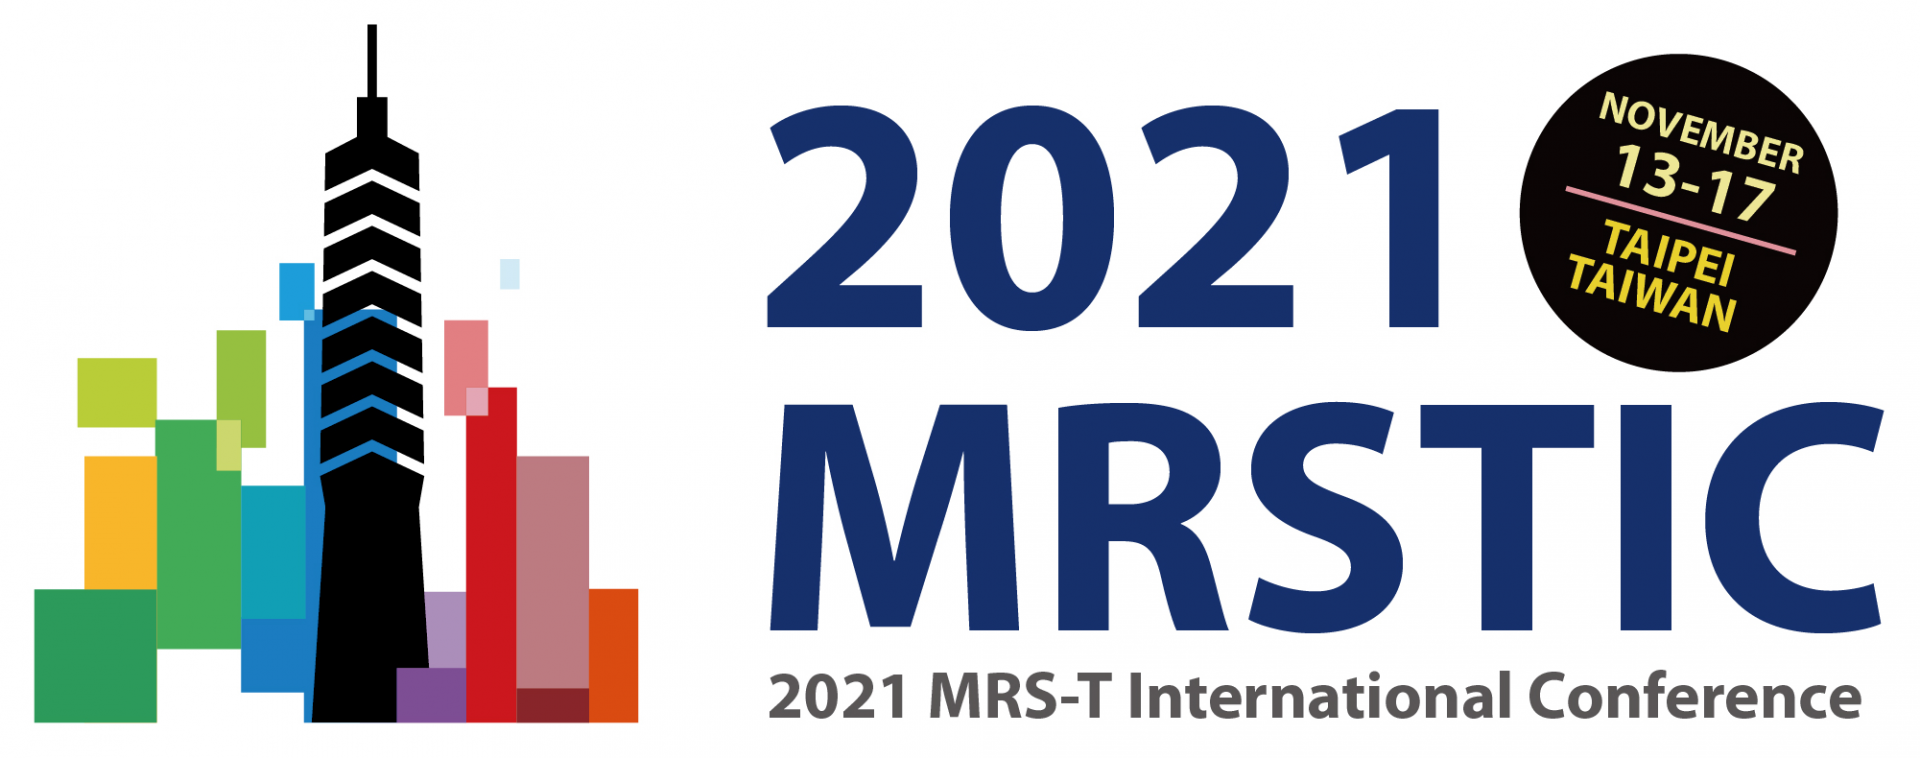 MRSTIC 2021 logo